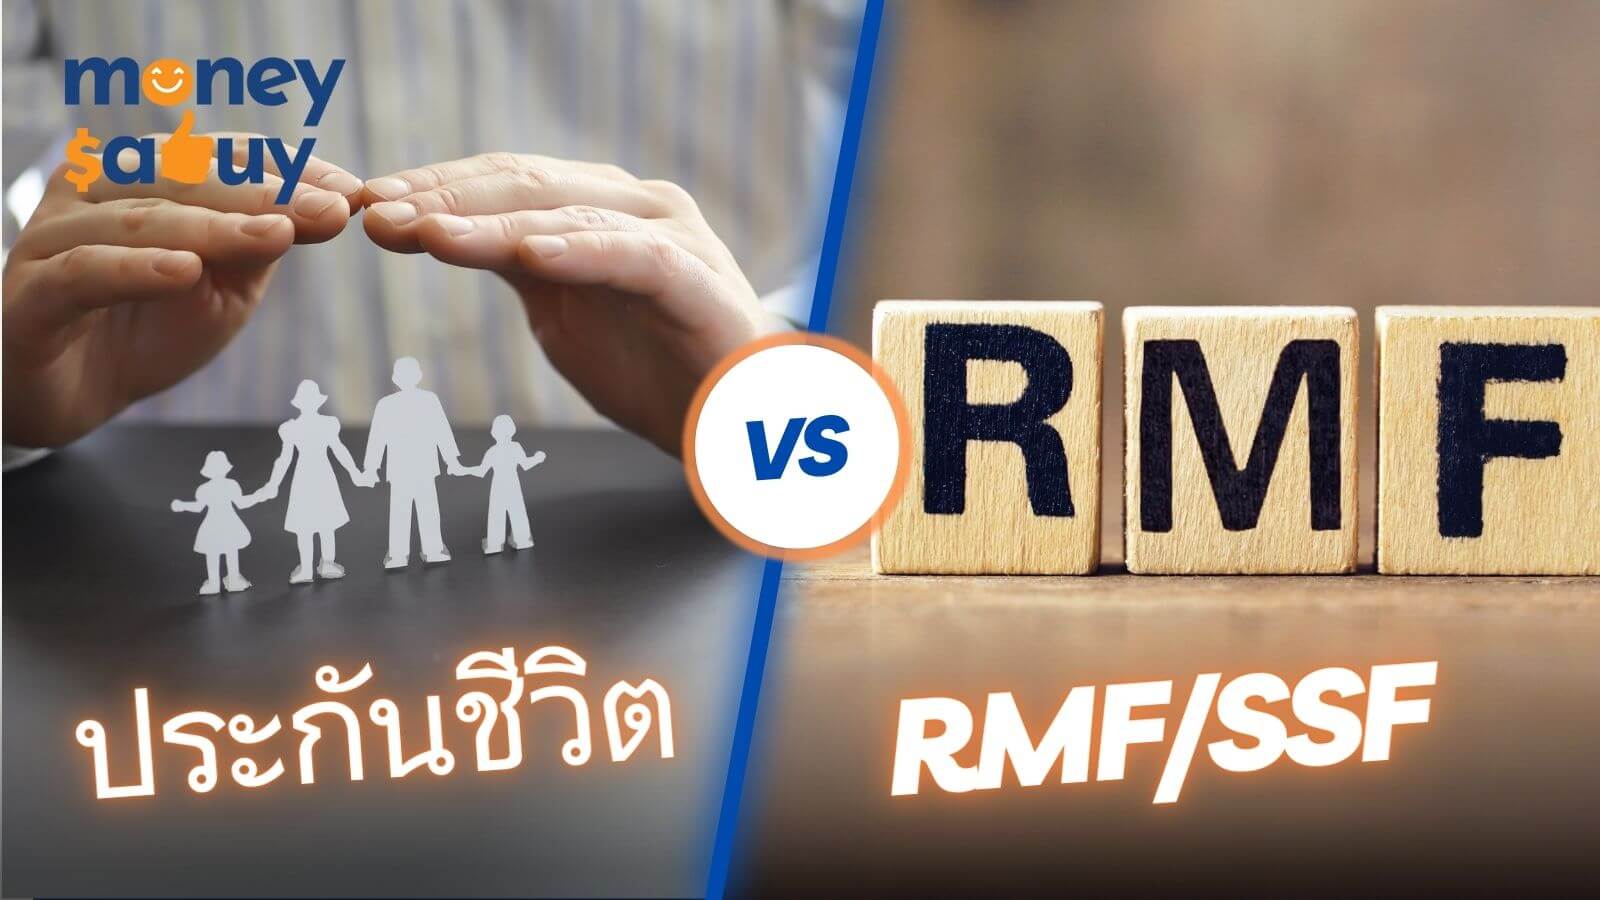 ซื้อประกันชีวิต vs. ลงทุนRMFSSF